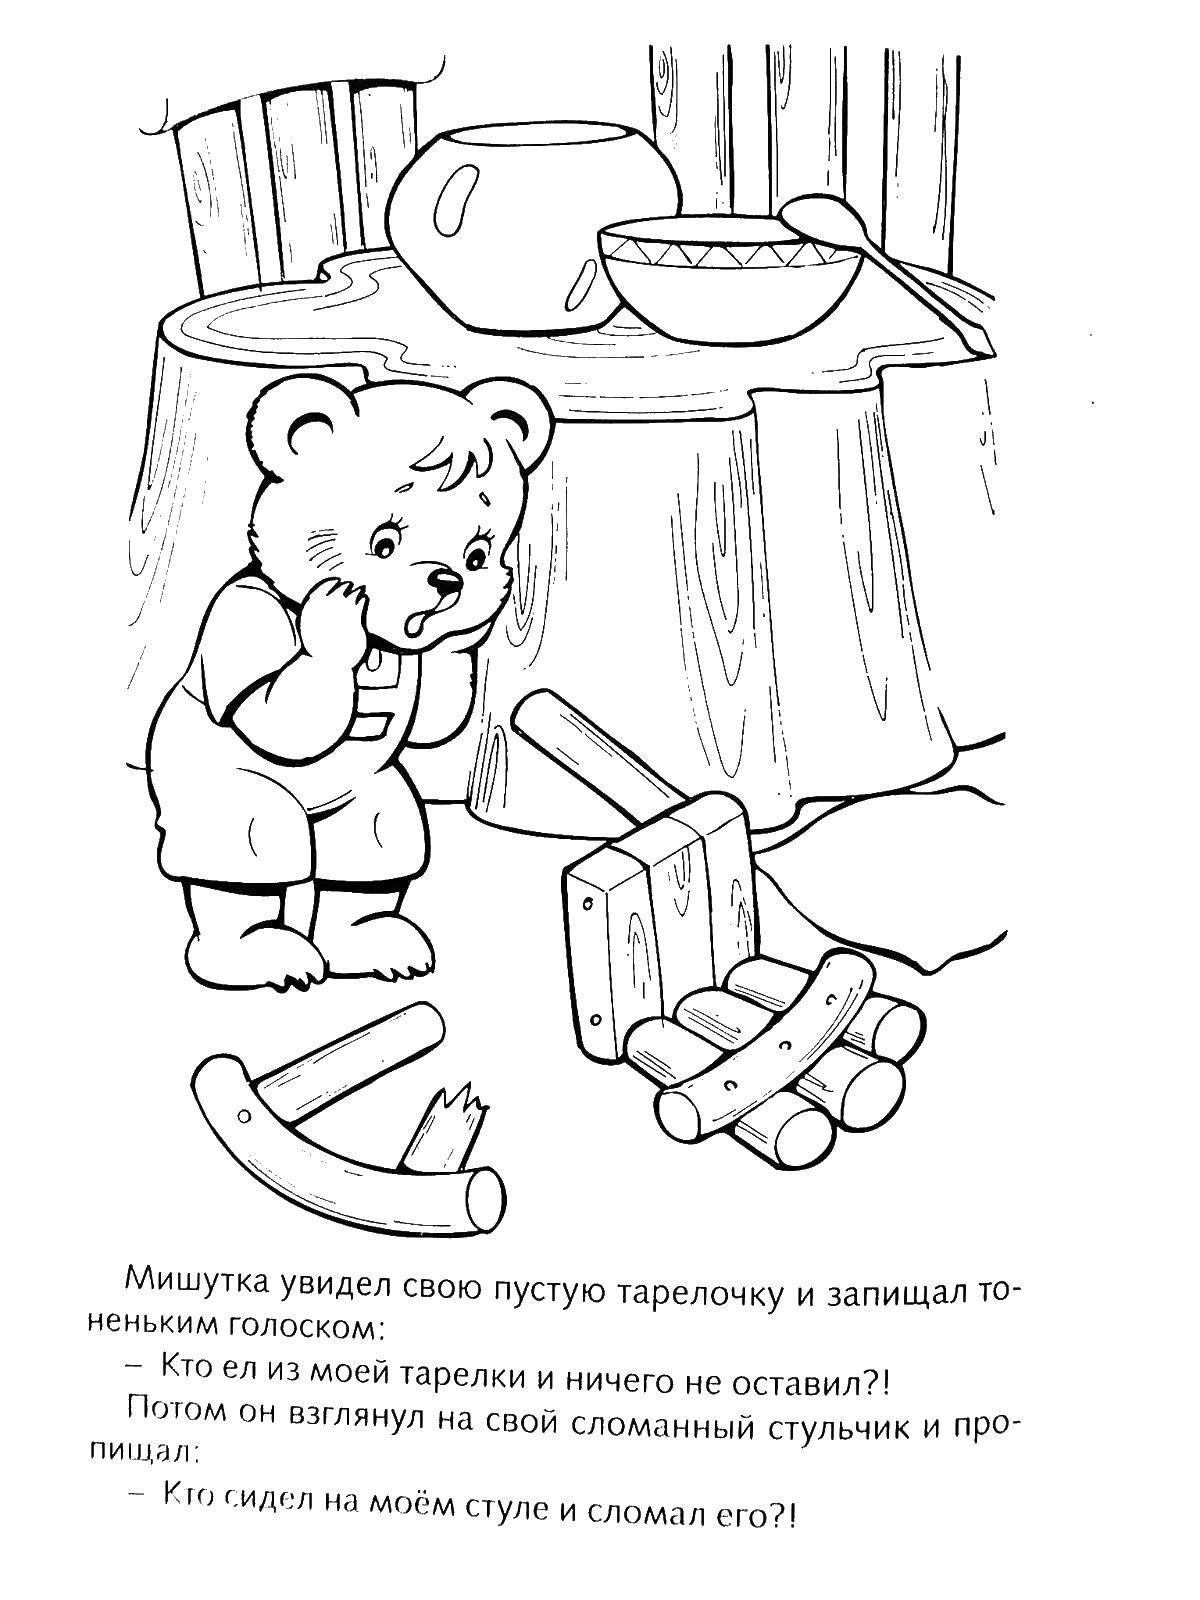 Название: Раскраска Мишке сломали стульчик. Категория: три медведя. Теги: медведь, стул.